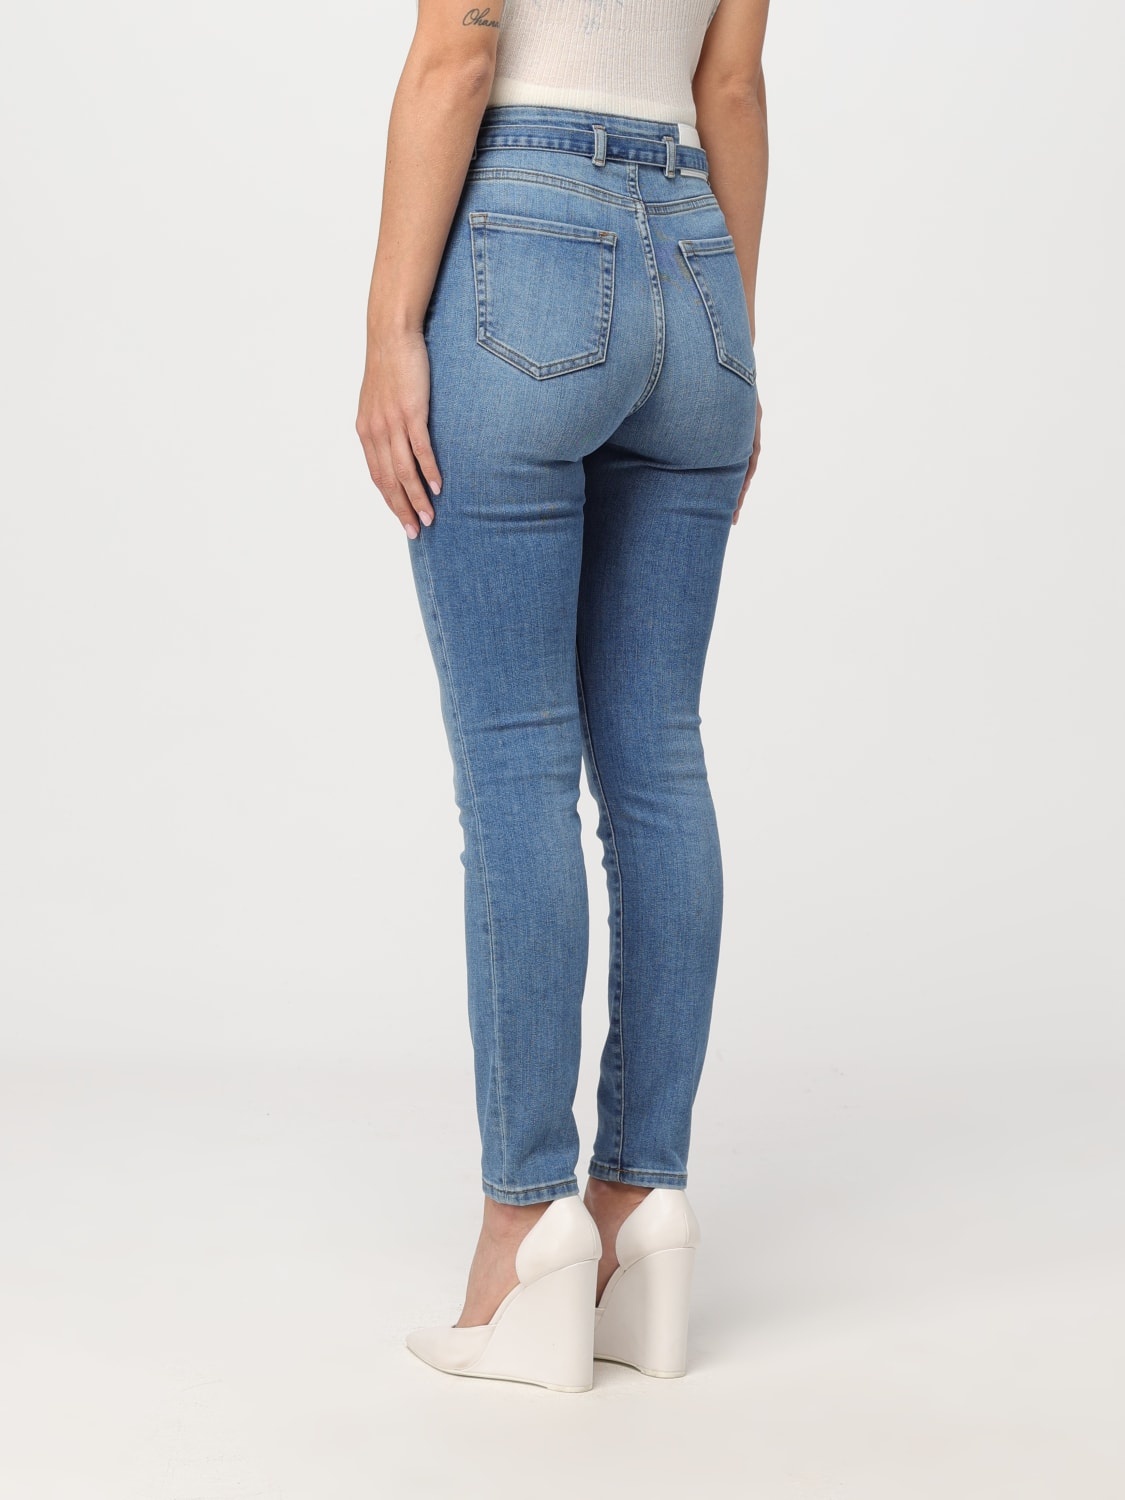 Jeans woman Pinko - 2